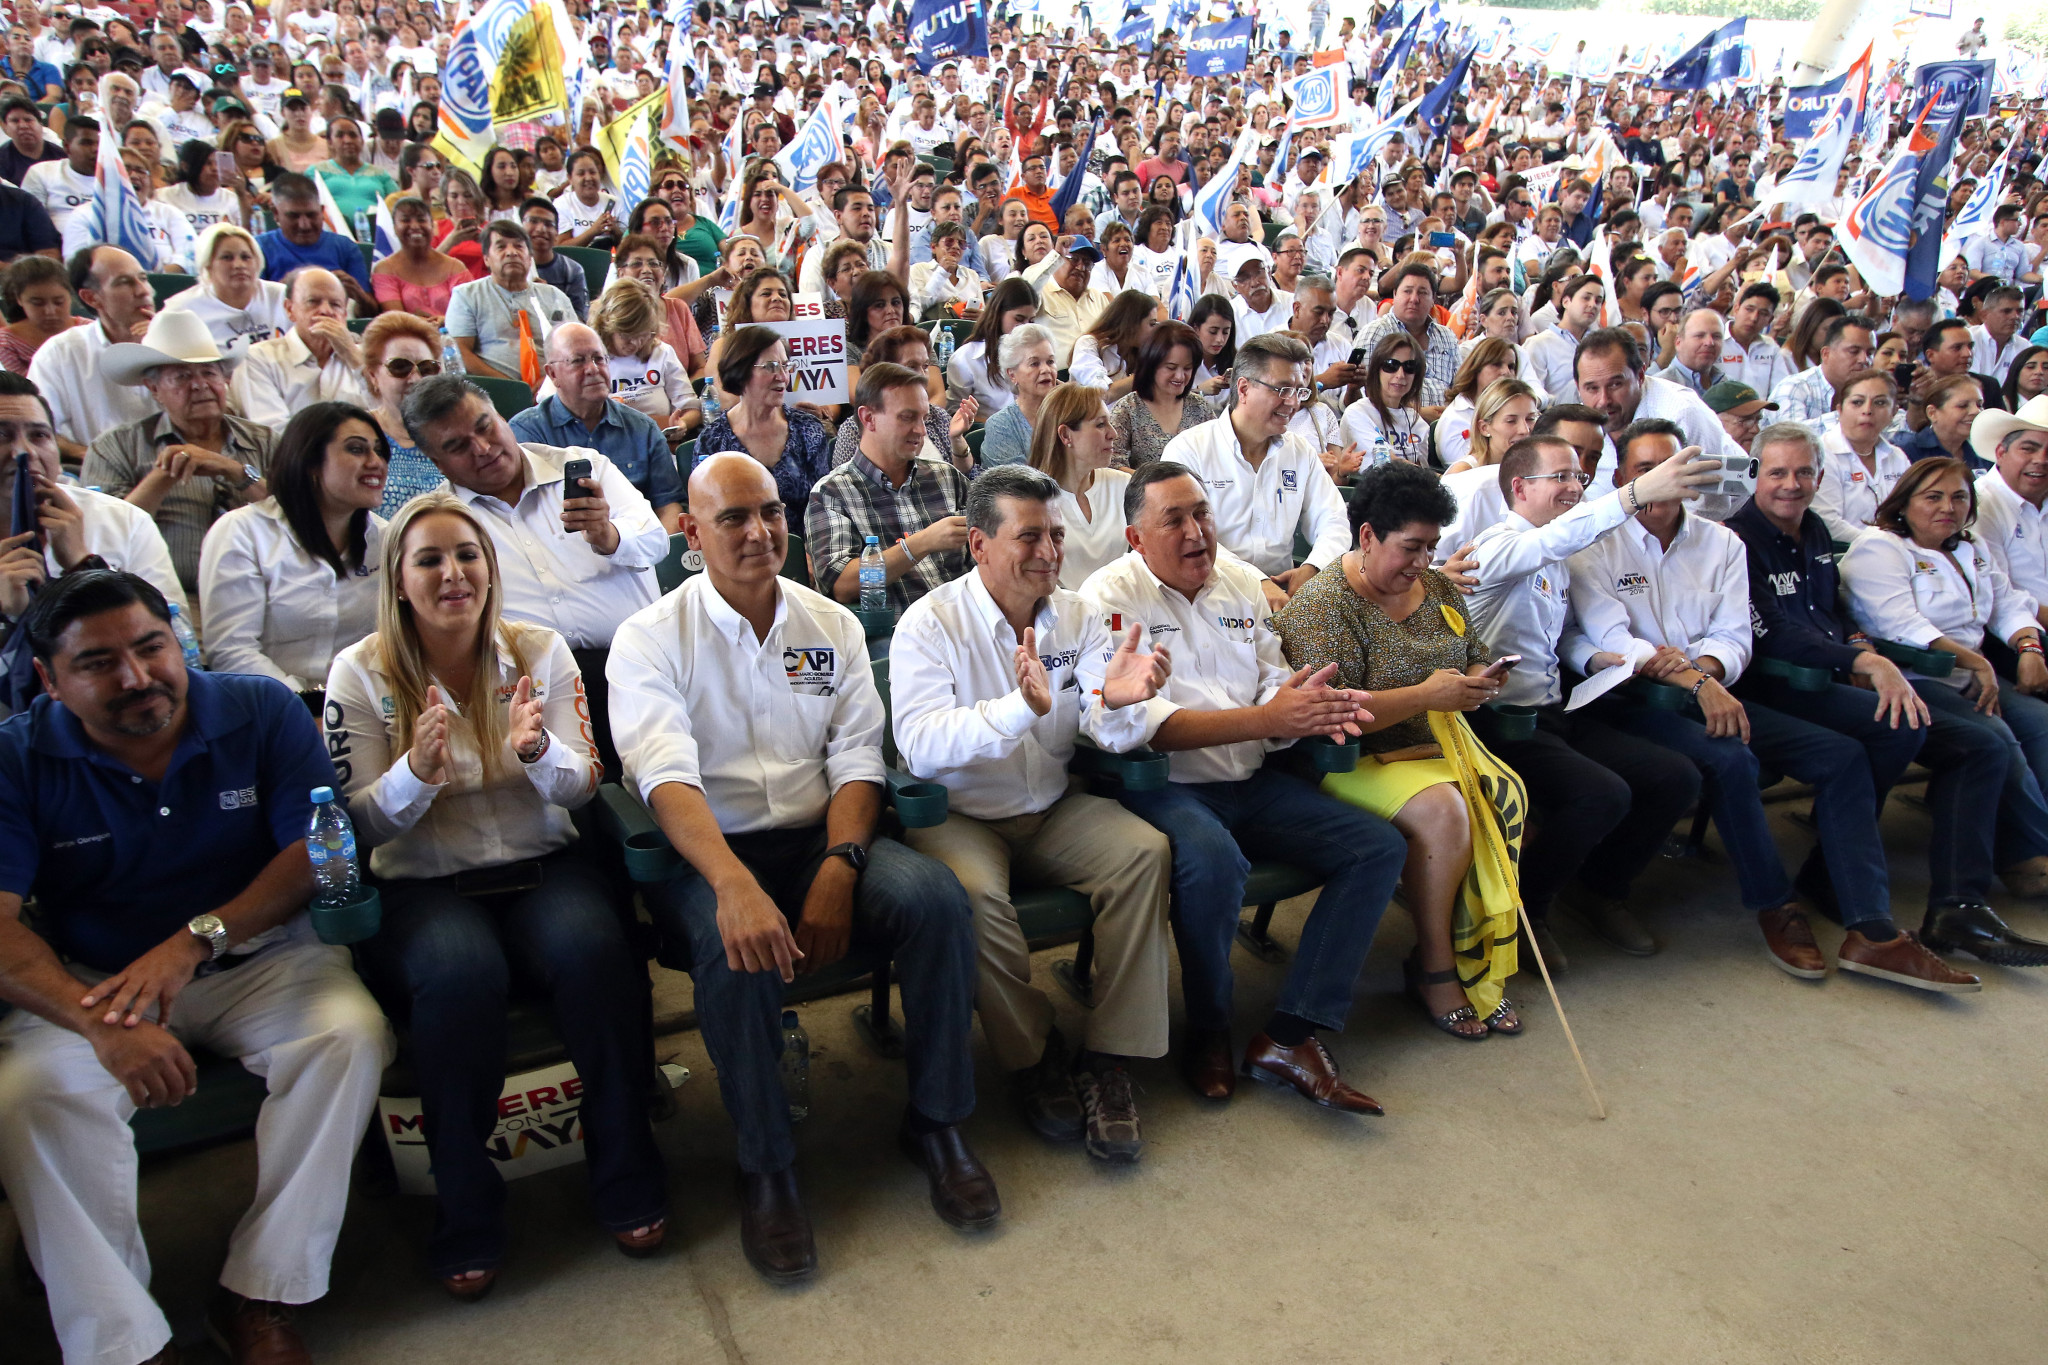 $!Aquí en Coahuila ha habido muchísima corrupción: Anaya #Candidatum